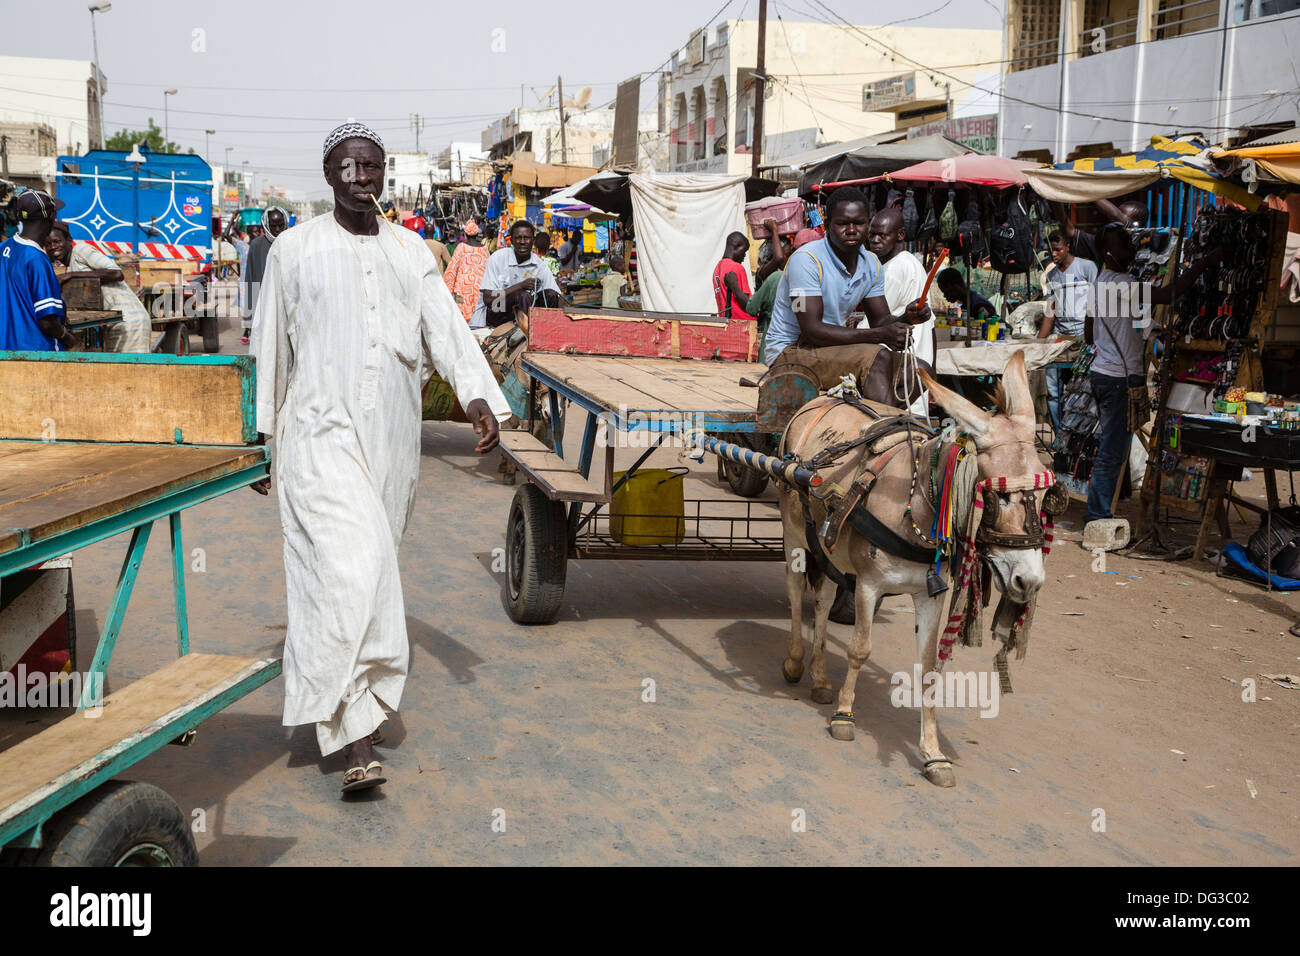 Il Senegal, Touba. Scena di strada. L'uomo ha un chewing stick nella sua bocca, per la pulizia dei denti. Foto Stock